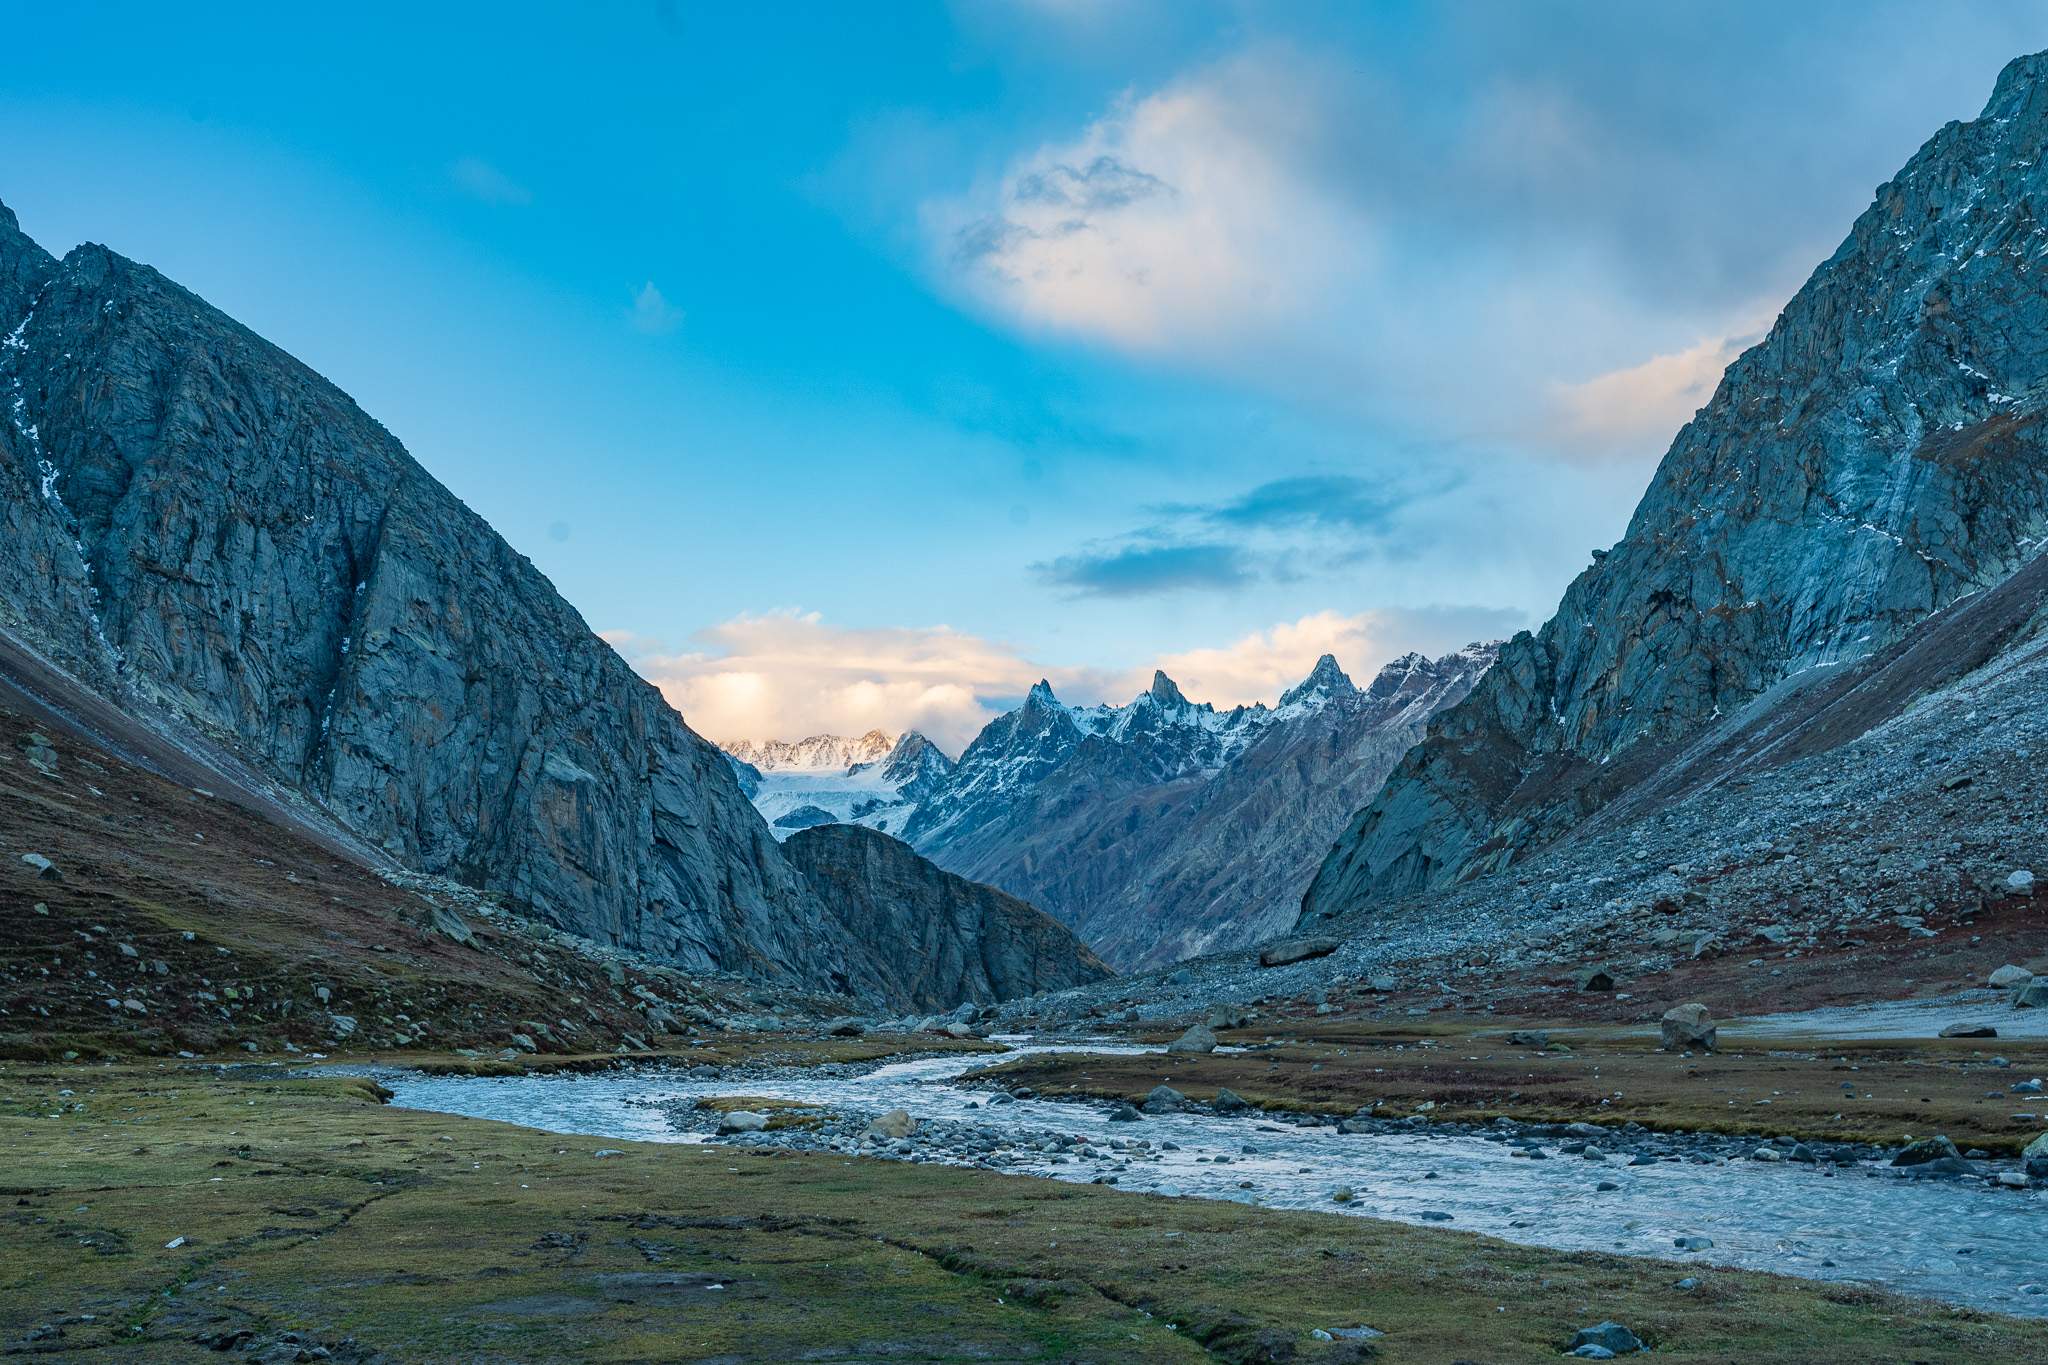 Day 3 of Hampta Pass Trek, Himalayas, India